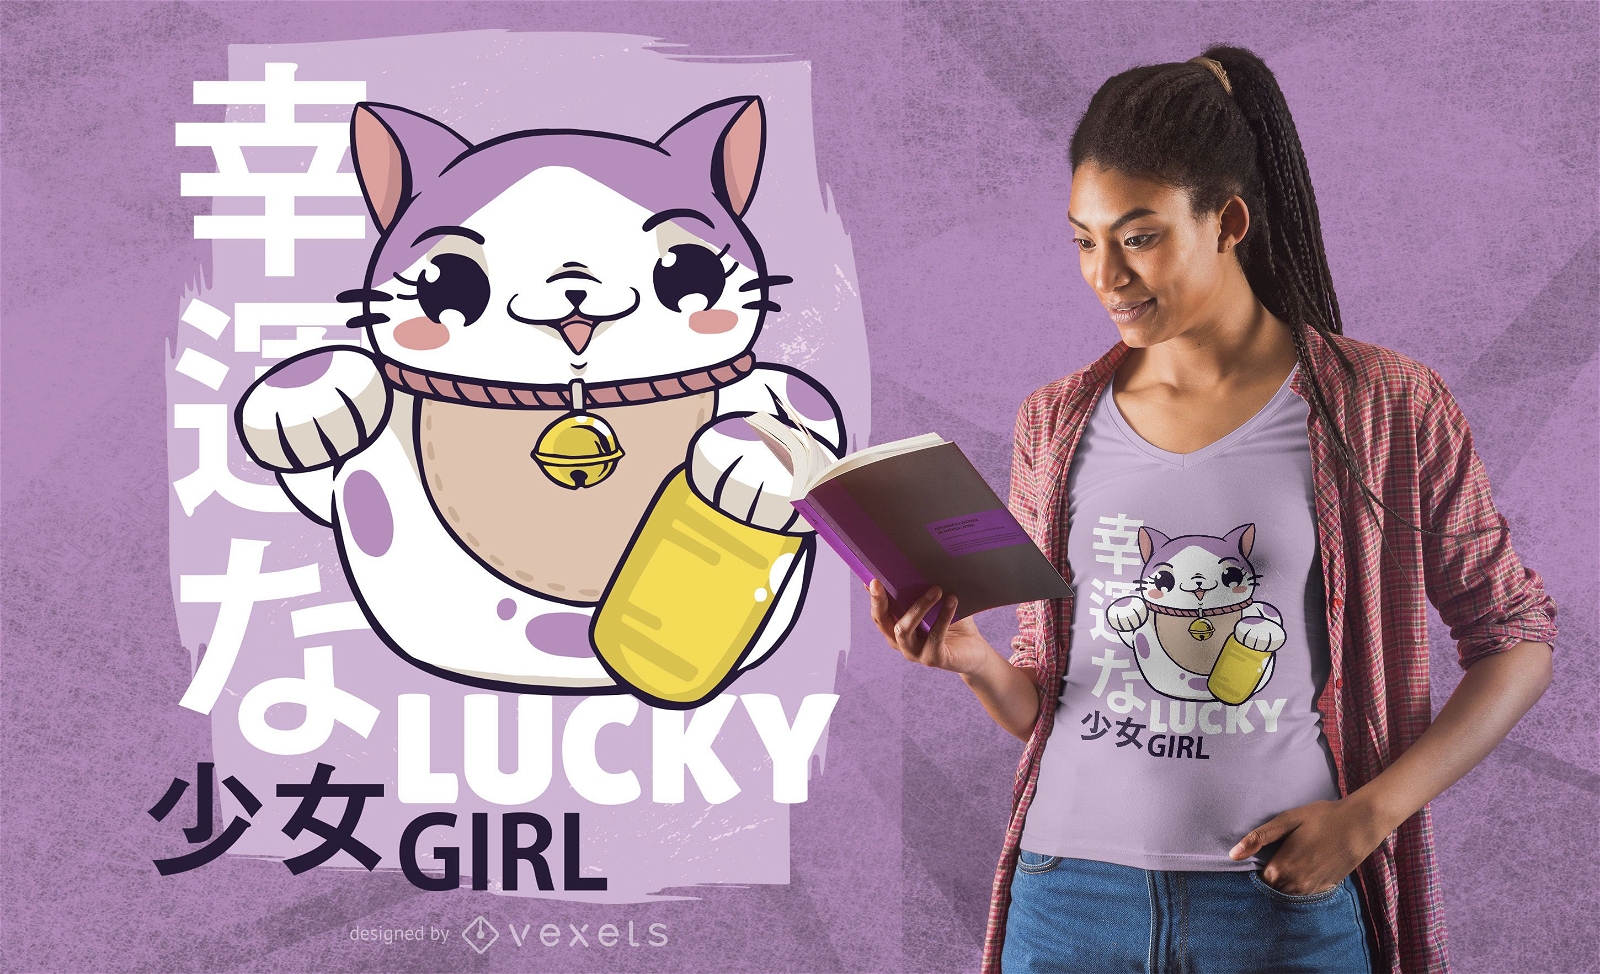 Lucky girl t-shirt design